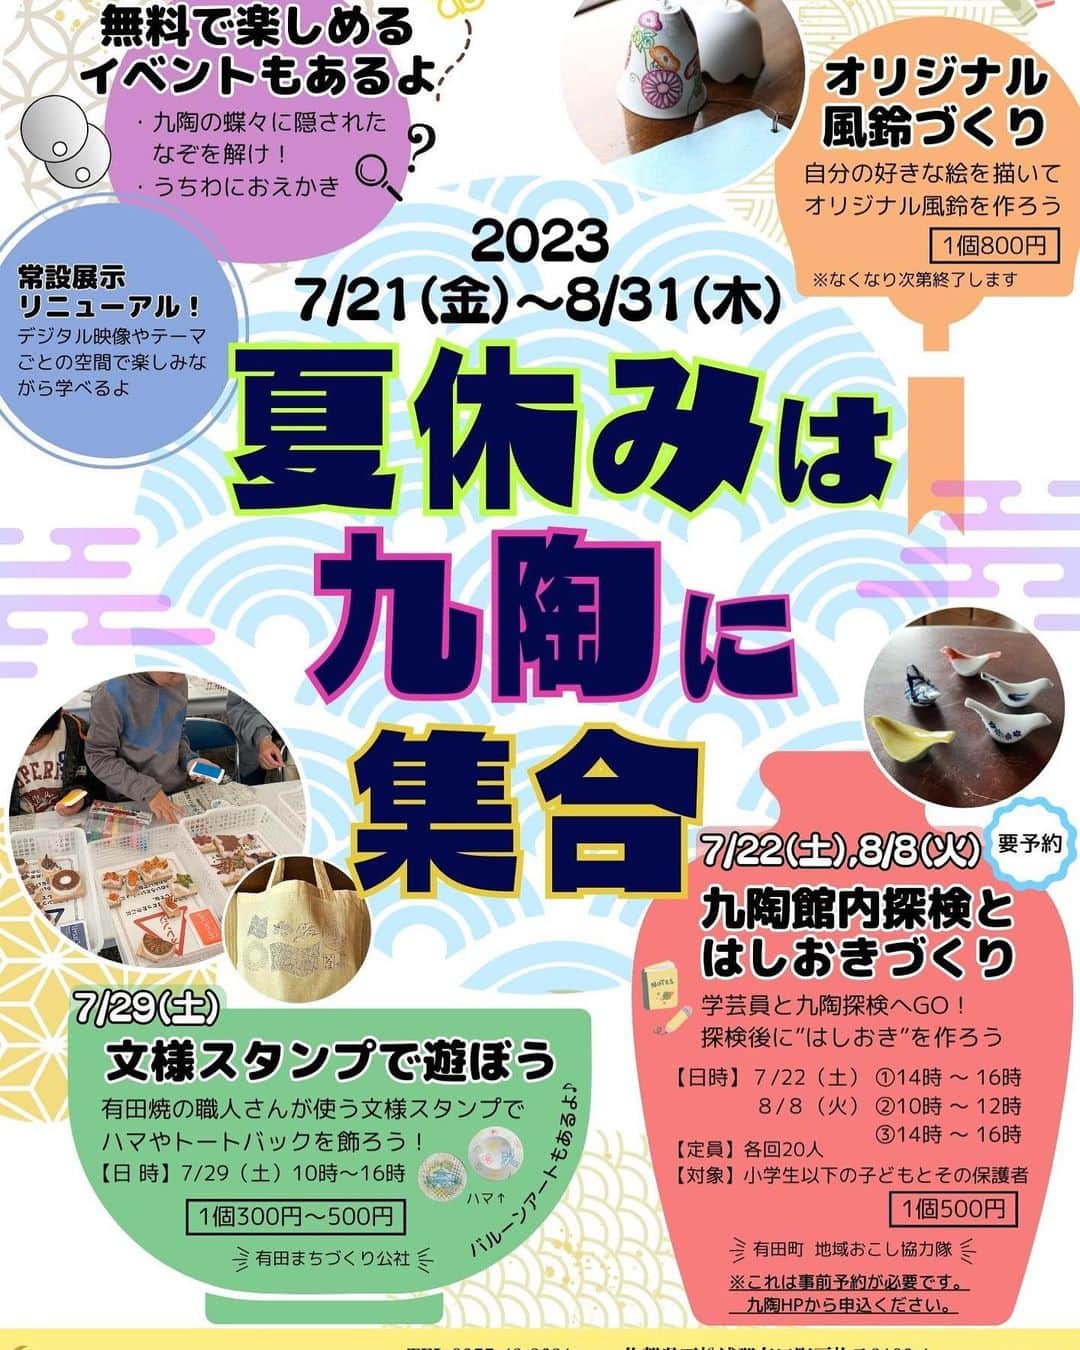 ari ta suのインスタグラム：「有田町にある佐賀県立九州陶磁文化館で、夏休みイベントが開催されます😊 (文化館と名前はありますが市民会館ではなく、九州・肥前の陶磁器を紹介する県立の博物館なんです。 小さな町に県立の博物館があるなんて😙有田町のちょっとした自慢ポイントです🙌)  7月22日(土)、8月8日(火) は「九陶館内探検と箸置きづくり」 学芸員さんと普段は見ることの出来ない館内を探検出来る貴重な機会です‼︎ 子供ならではの発想で絵付けした箸置きは、この夏の宝物になること間違いなしです。  7月29日(土) は有田まちづくり公社による「文様スタンプで遊ぼう」です。 GWに好評だったイベントが再登場します。涼しい博物館でのんびり楽しく、有田焼きのことや夏休みにやりたいことなどおしゃべりしながら制作しましょう。  私達も今から楽しみにしています♪  昨年、常設展示がリニューアルされてパワーアップした九州陶磁文化館。  まだの方はぜひ この夏九陶に集合してくださいね☺️🙌  佐賀県立九州陶磁文化館 住所:佐賀県西松浦郡有田町戸杓乙3100-1 休館日:月曜日 (月曜日が休日の場合は翌日) 開館時間:9時〜17時 入館料金:無料 (但し、特別企画展等は有料の場合があります。)  ※イベントの詳細は、 九陶HPをご覧ください。  #佐賀県#有田町#有田焼⠀ #aritajapan⠀ #佐賀旅行#九州旅行#九州観光⠀ ⠀ #うつわ好き⠀ #器好き#器好きな人と繋がりたい⠀ #器好きな人とつながりた」